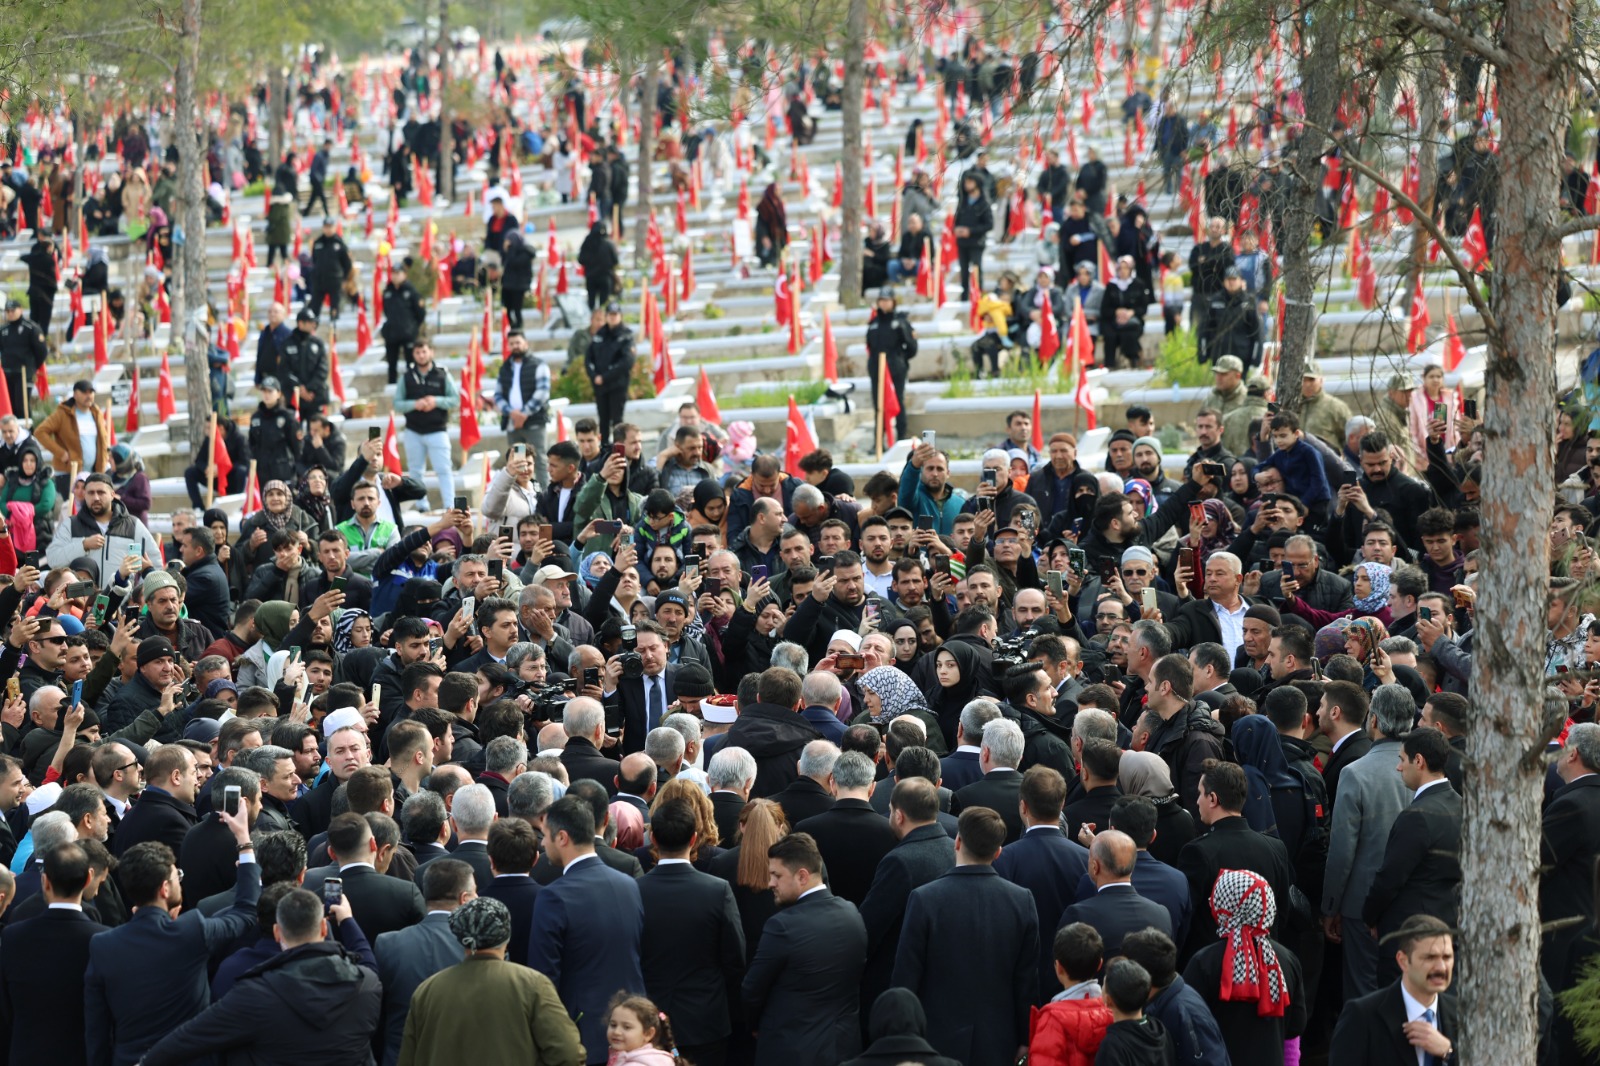 Cumhurbaşkanı Recep Tayyip Erdoğan, 6 Şubat depremlerinin birinci yıl dönümünde Kahramanmaraş'a gerçekleştirdiği ziyarette, deprem şehitlerinin yattığı Kapıçam Şehir Mezarlığı'nı ziyaret etti. 